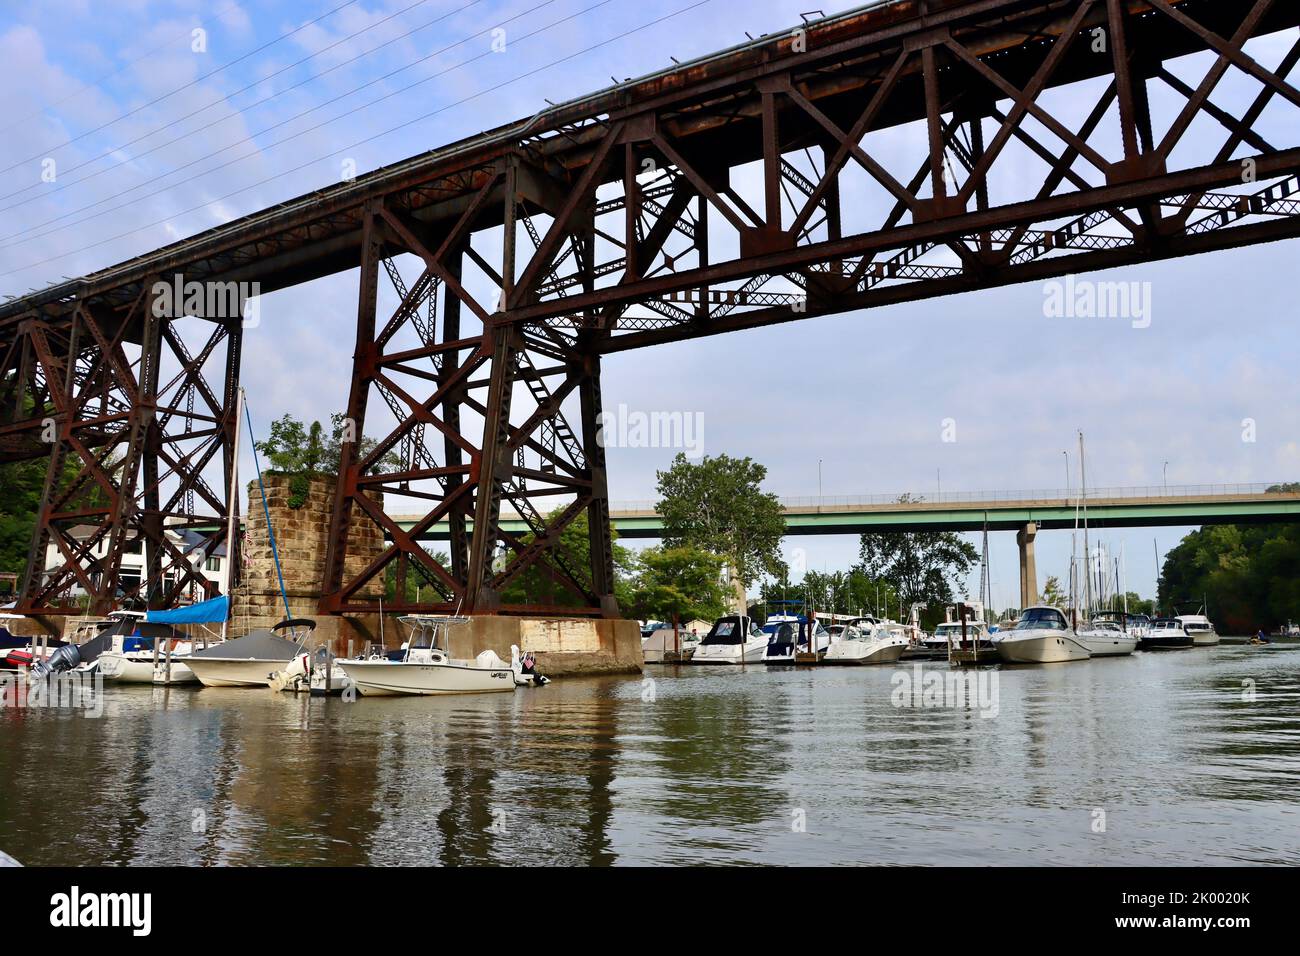 Clifton Park bridge and Detroit Rocky River bridge seen from Rocky River in Rocky River, Ohio Stock Photo